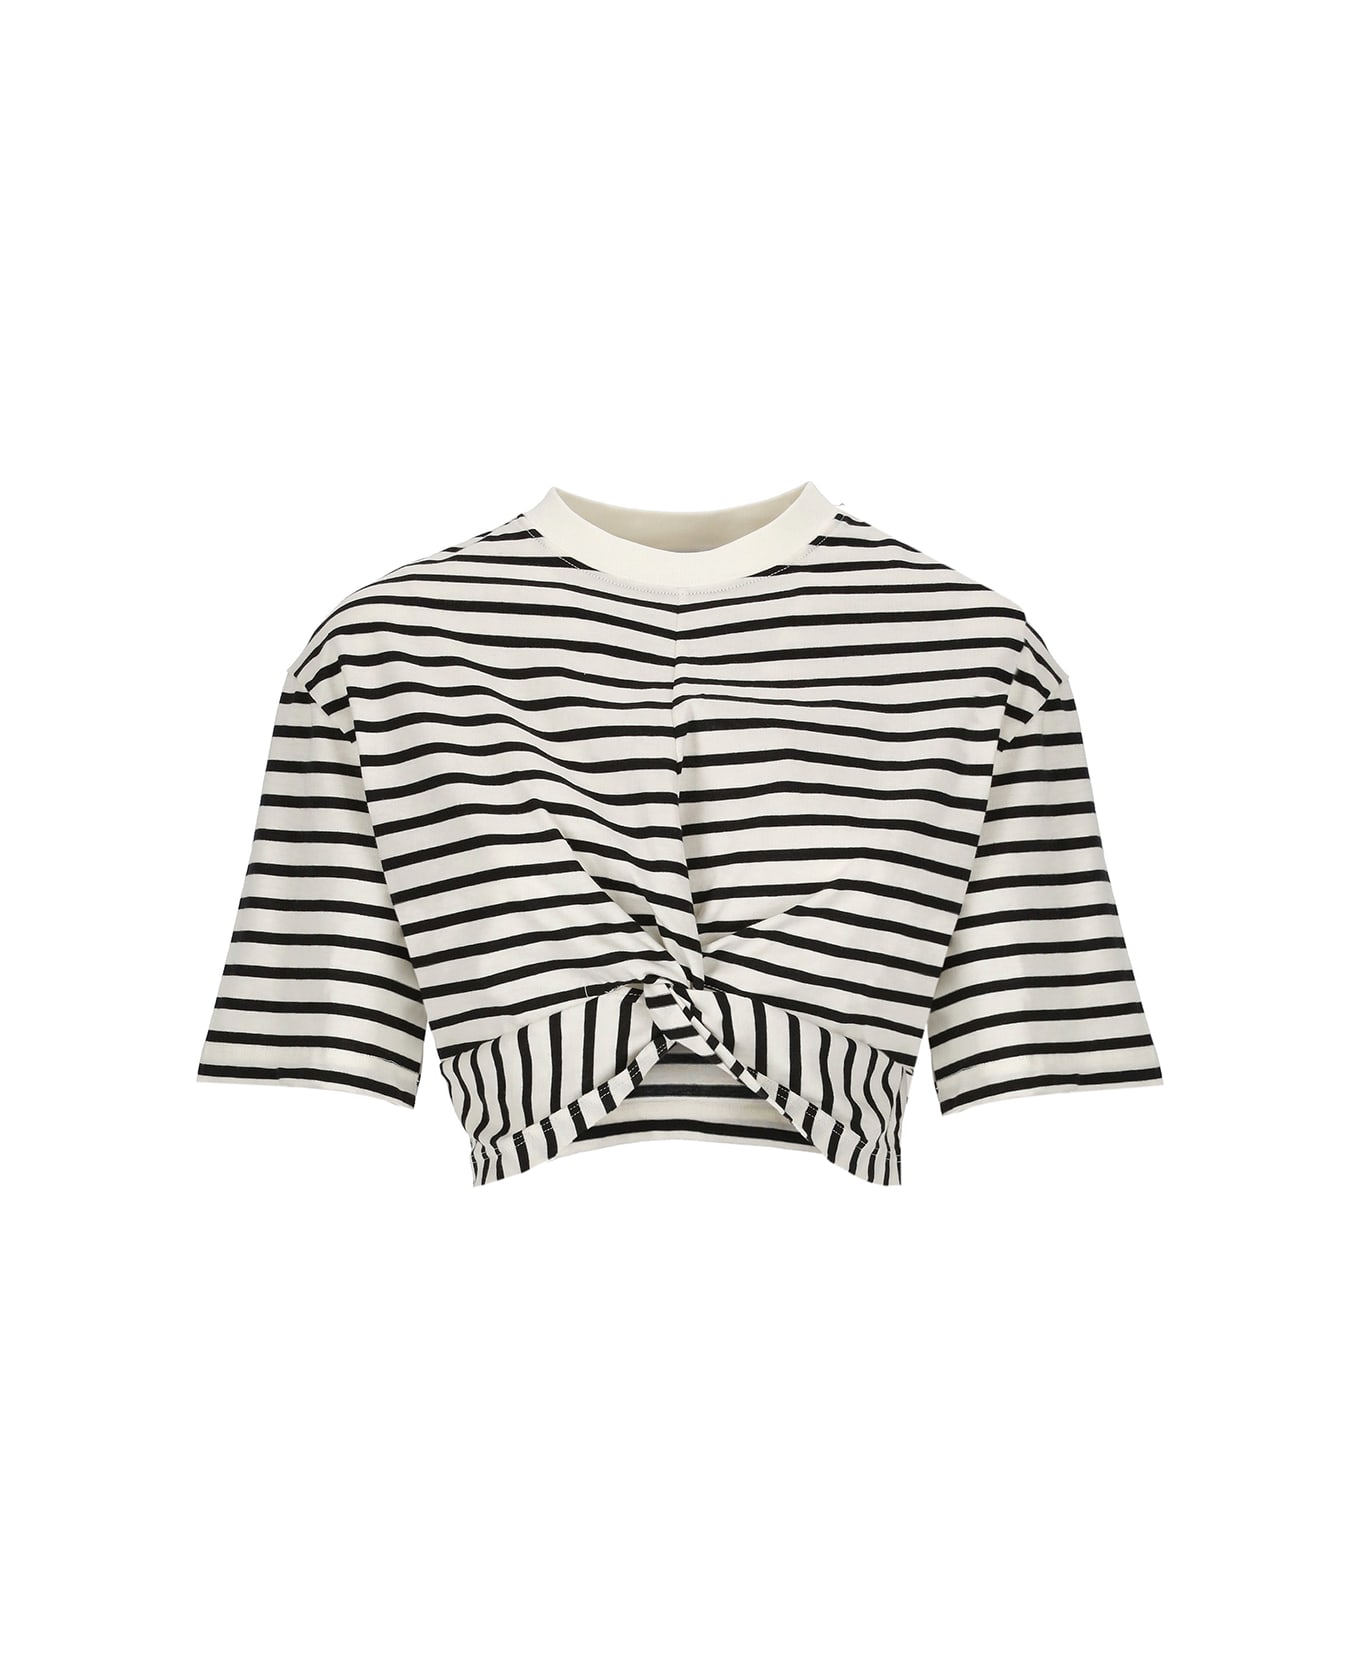 MSGM Striped T-shirt - White